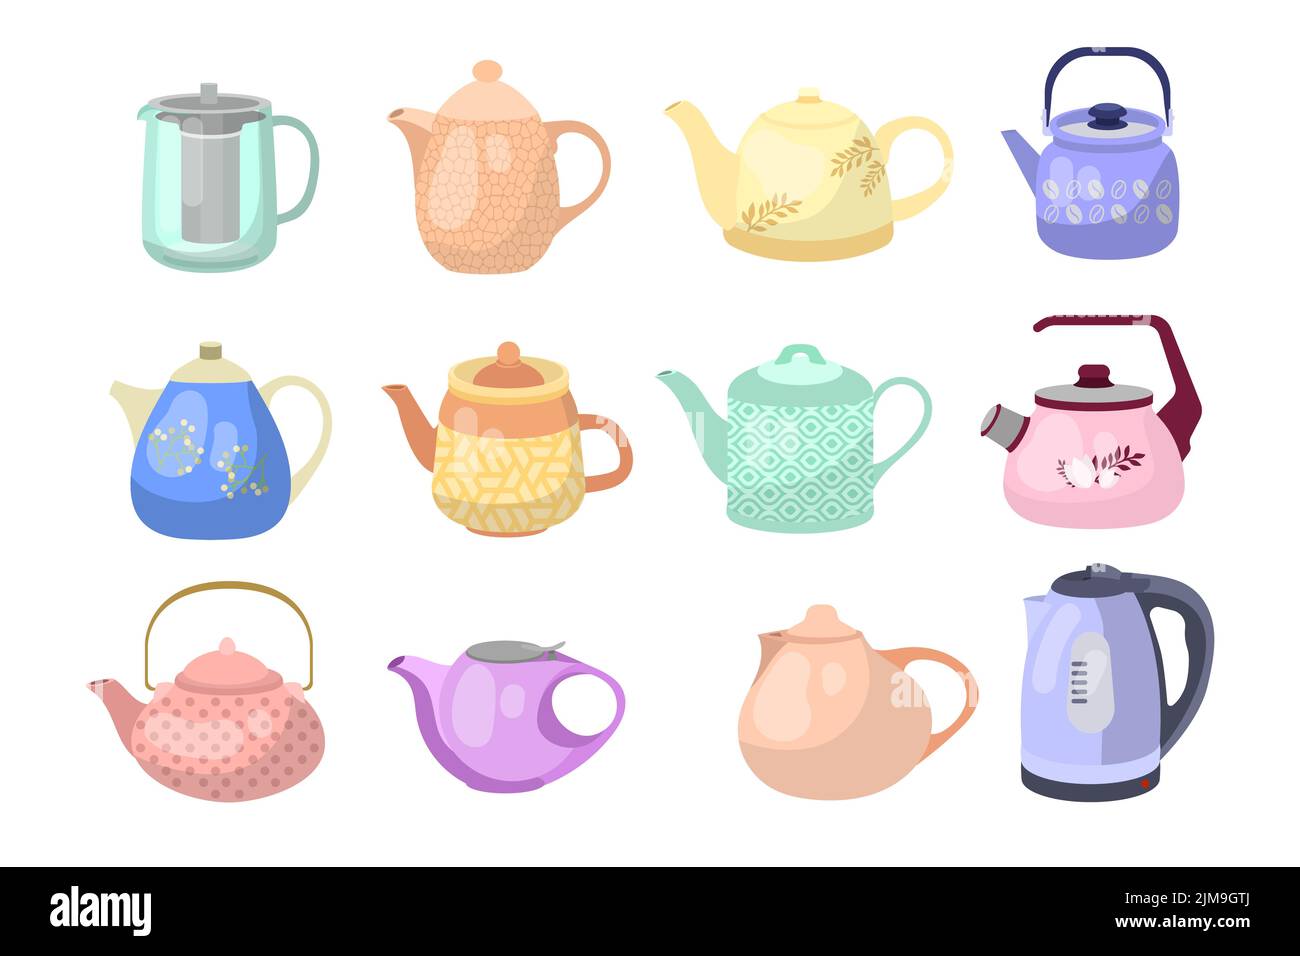 Bunte Teekannen und Wasserkocher Cartoon Illustration Set. Keramik-, Glas- und elektrische Wasserkocher zum Kochen von Wasser. Haushalt, Küchenutensilien, Dekoration, Stock Vektor